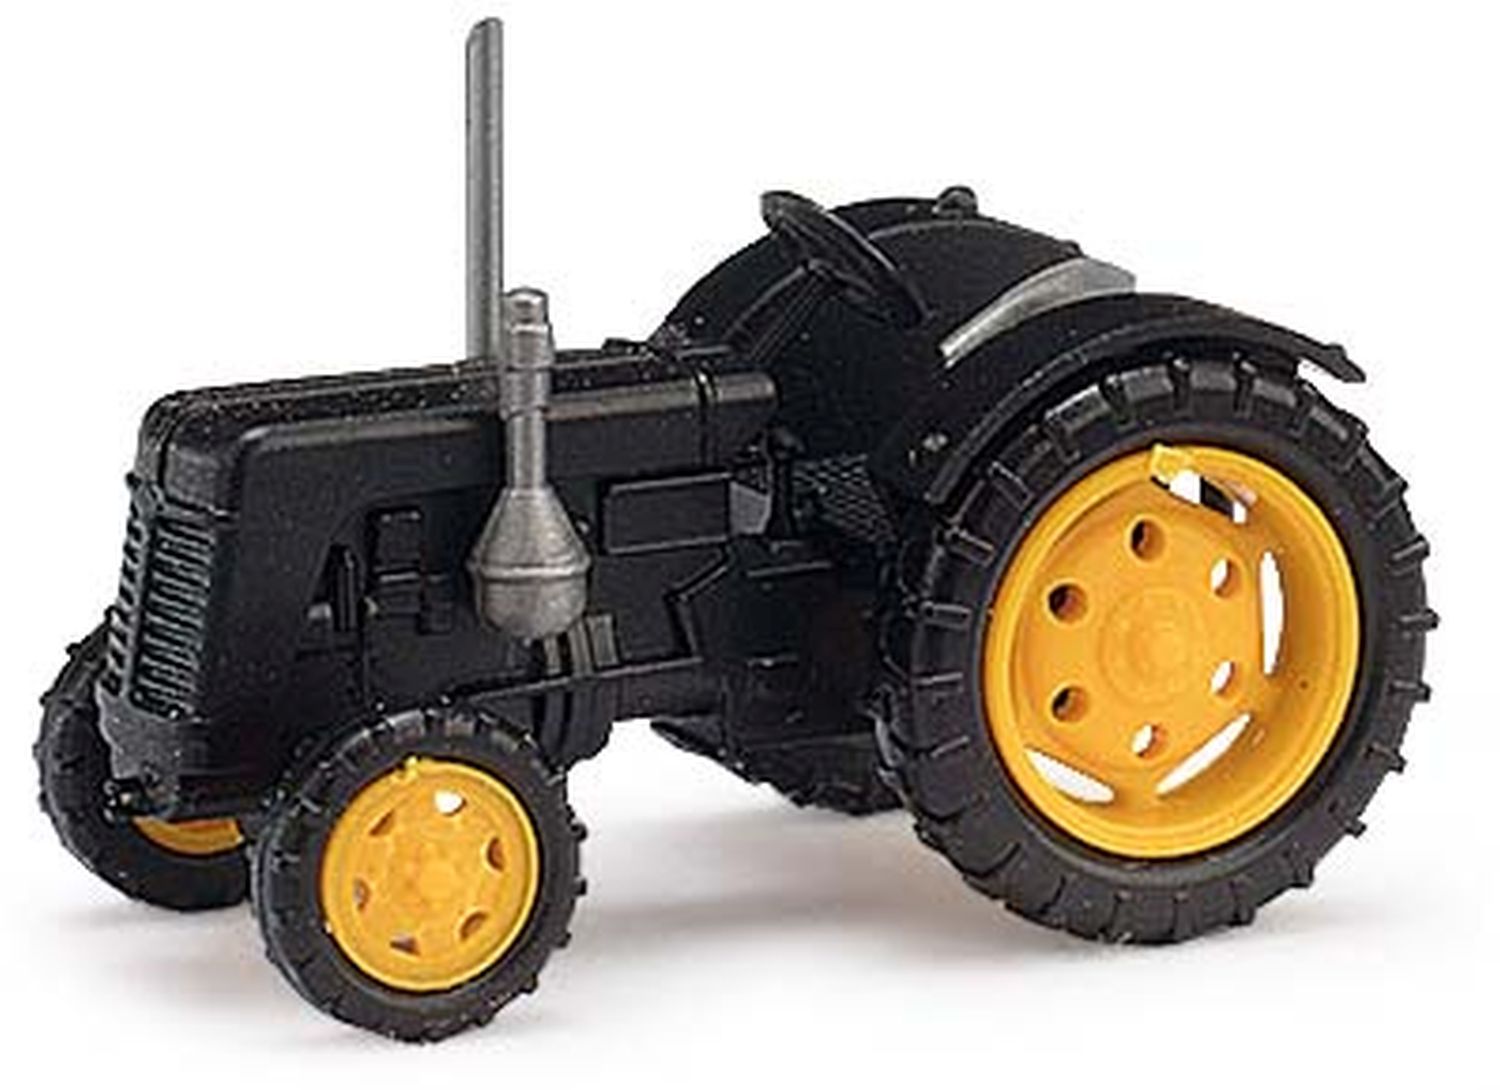 Busch 211006806 - Traktor Famulus, schwarz